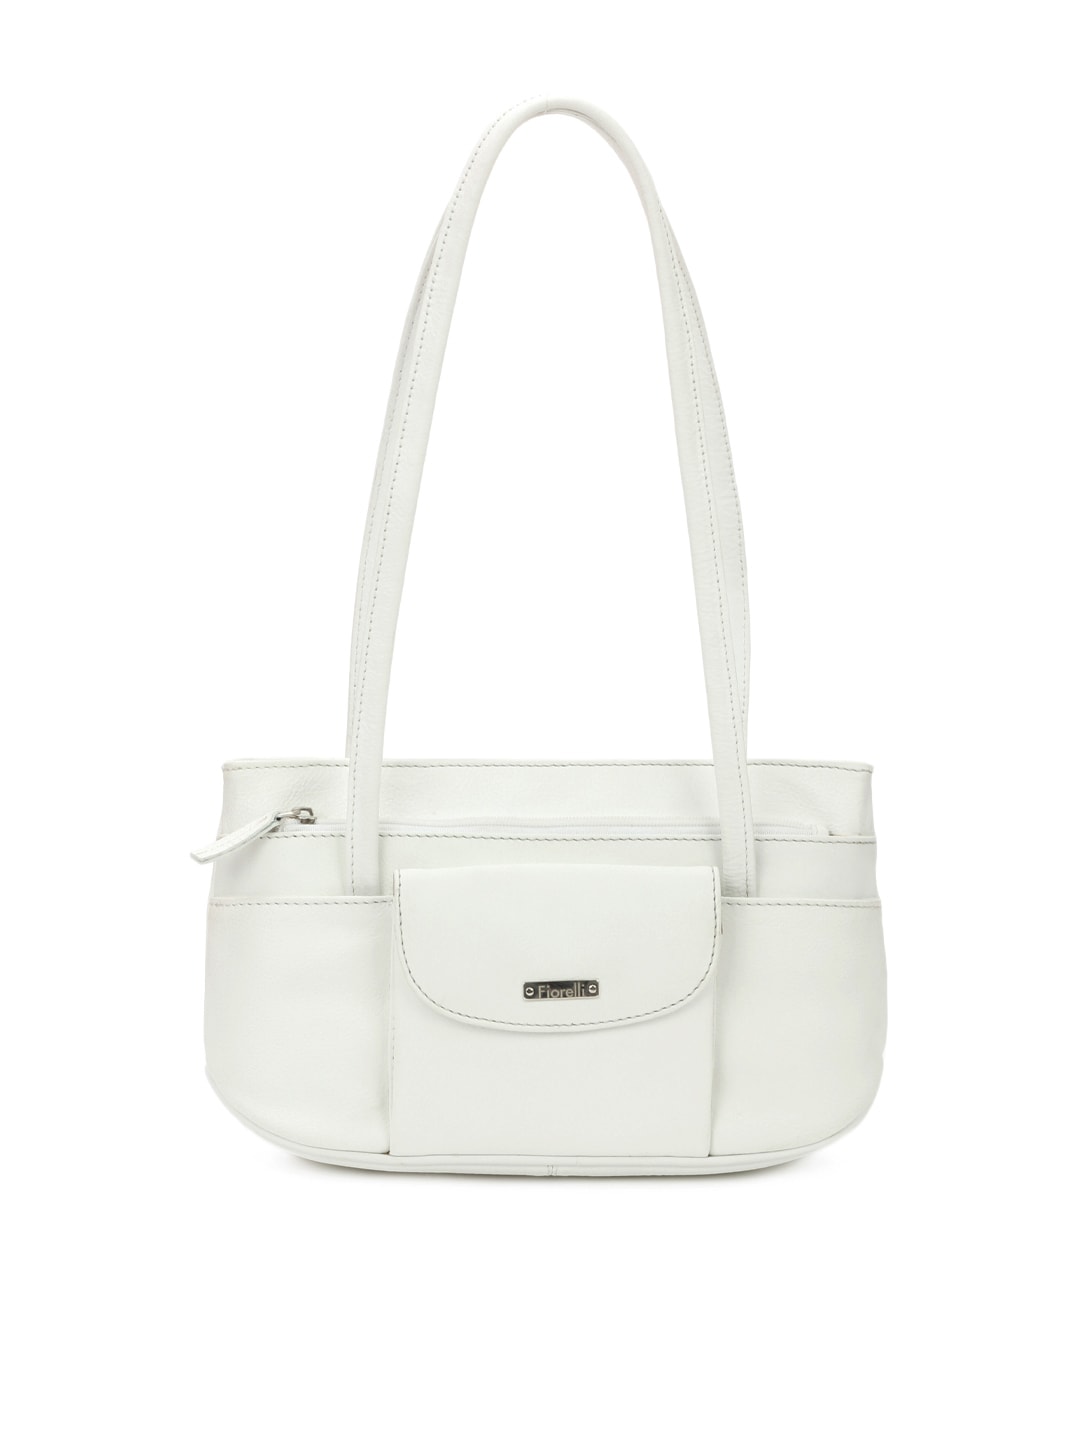 Fiorelli Women White Leather Handbag